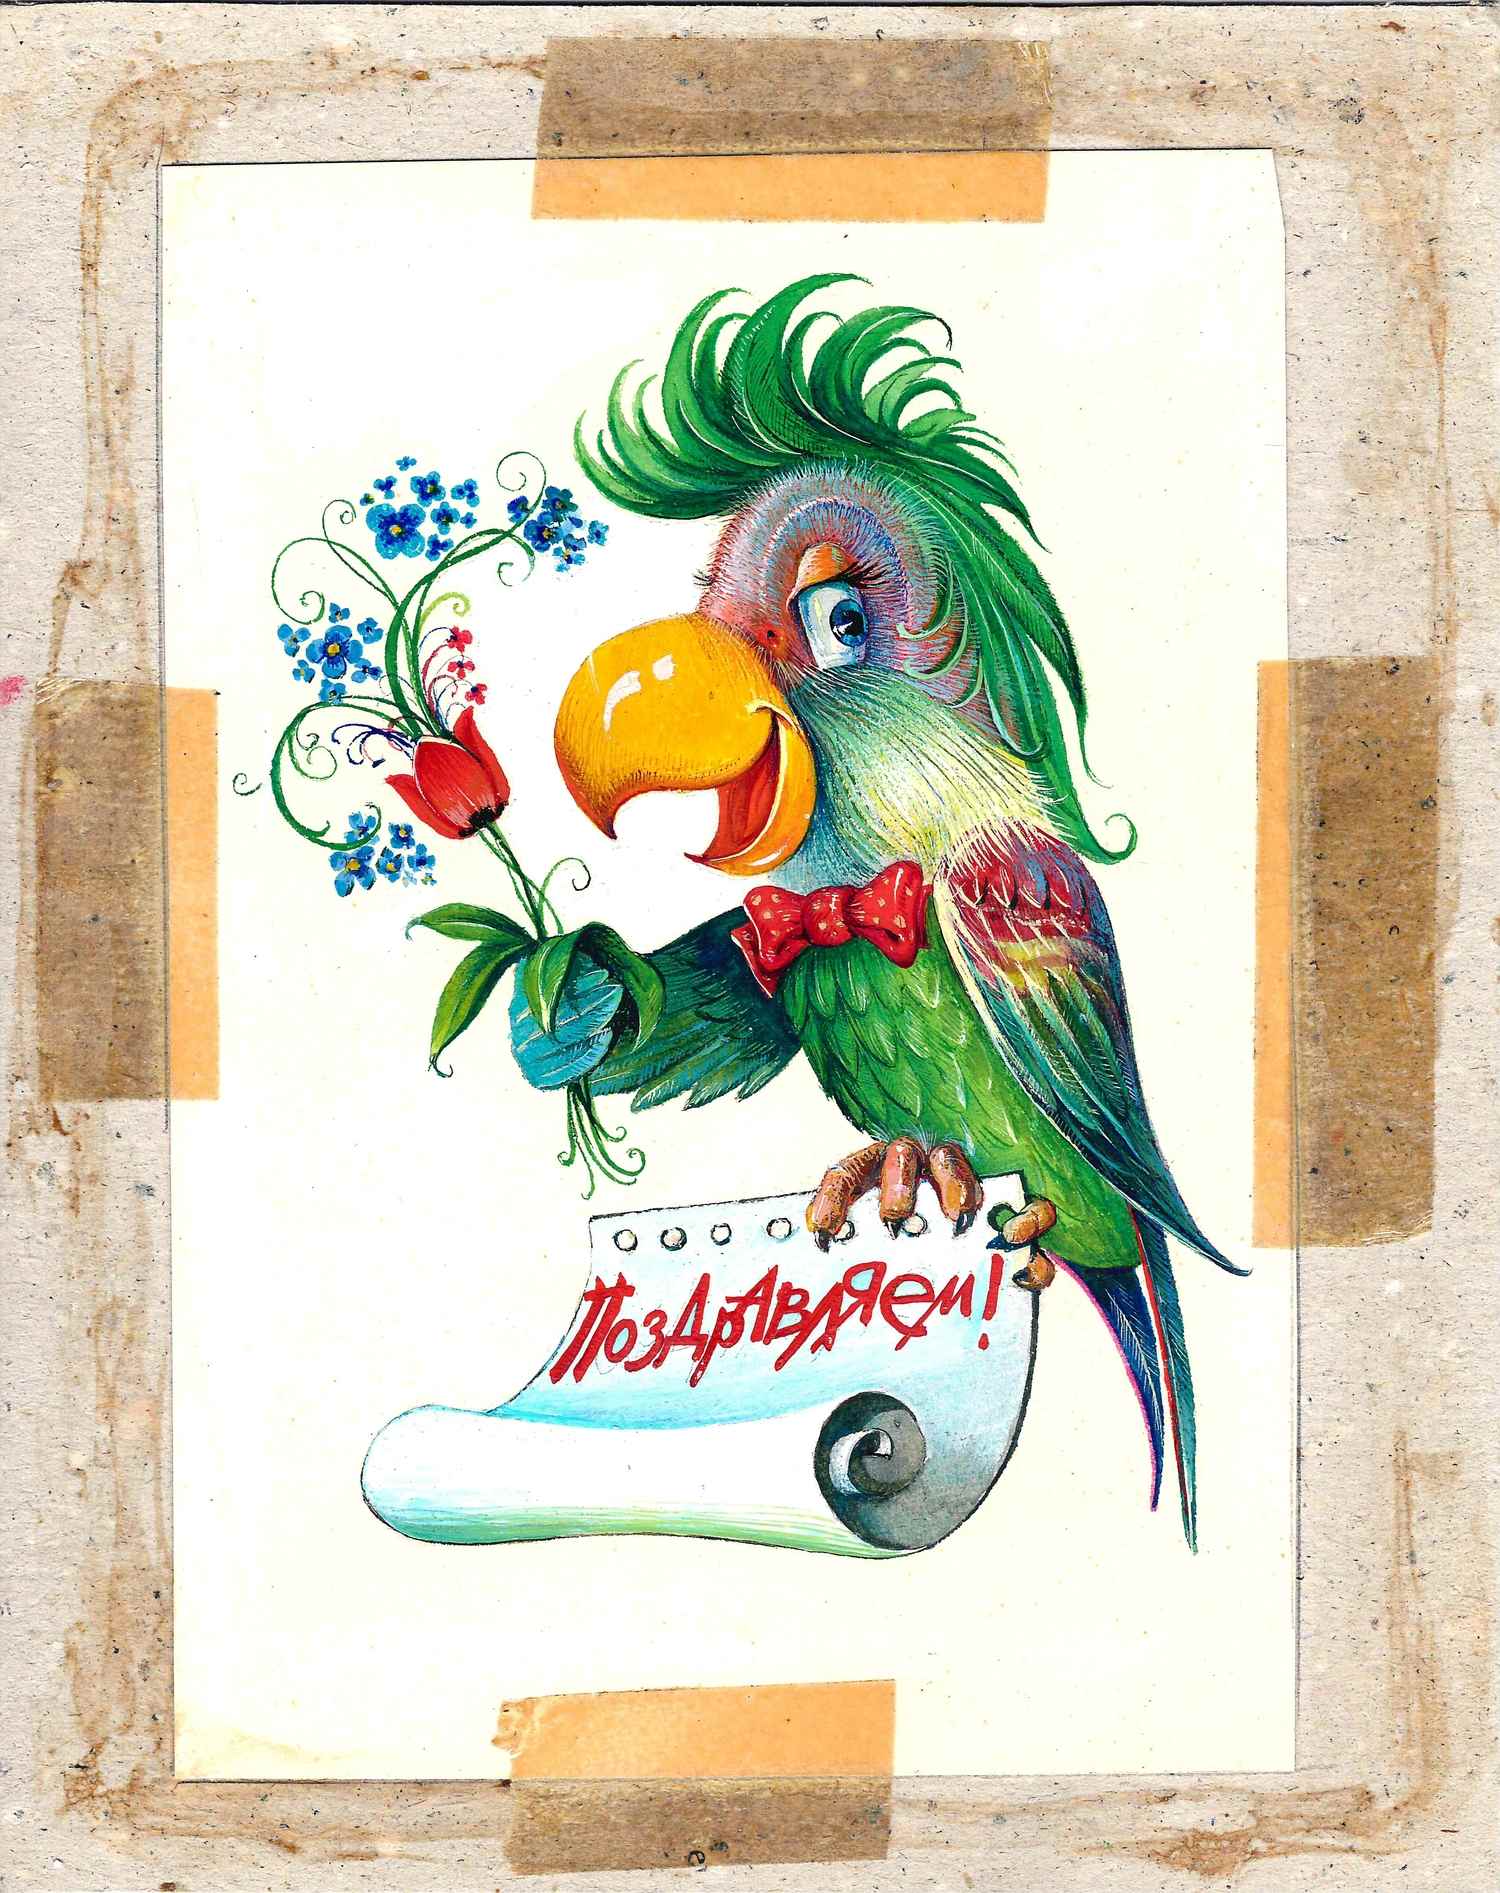 Адилханян Армен Гришаевич. Оригинальный макет открытки «Поздравляем!» 1988.